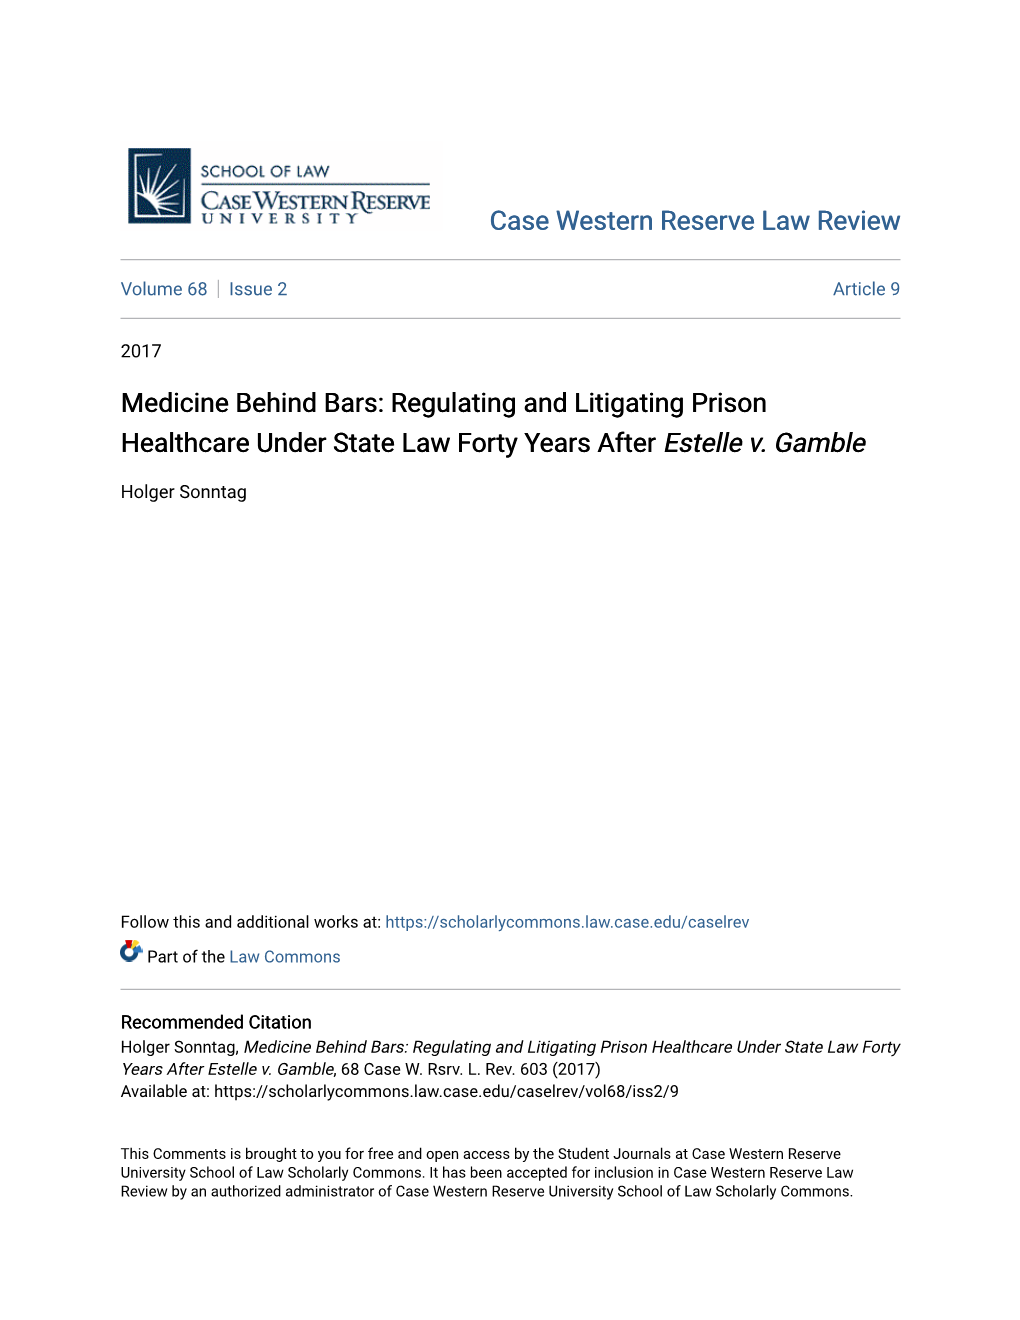 Medicine Behind Bars: Regulating and Litigating Prison Healthcare Under State Law Forty Years After Estelle V